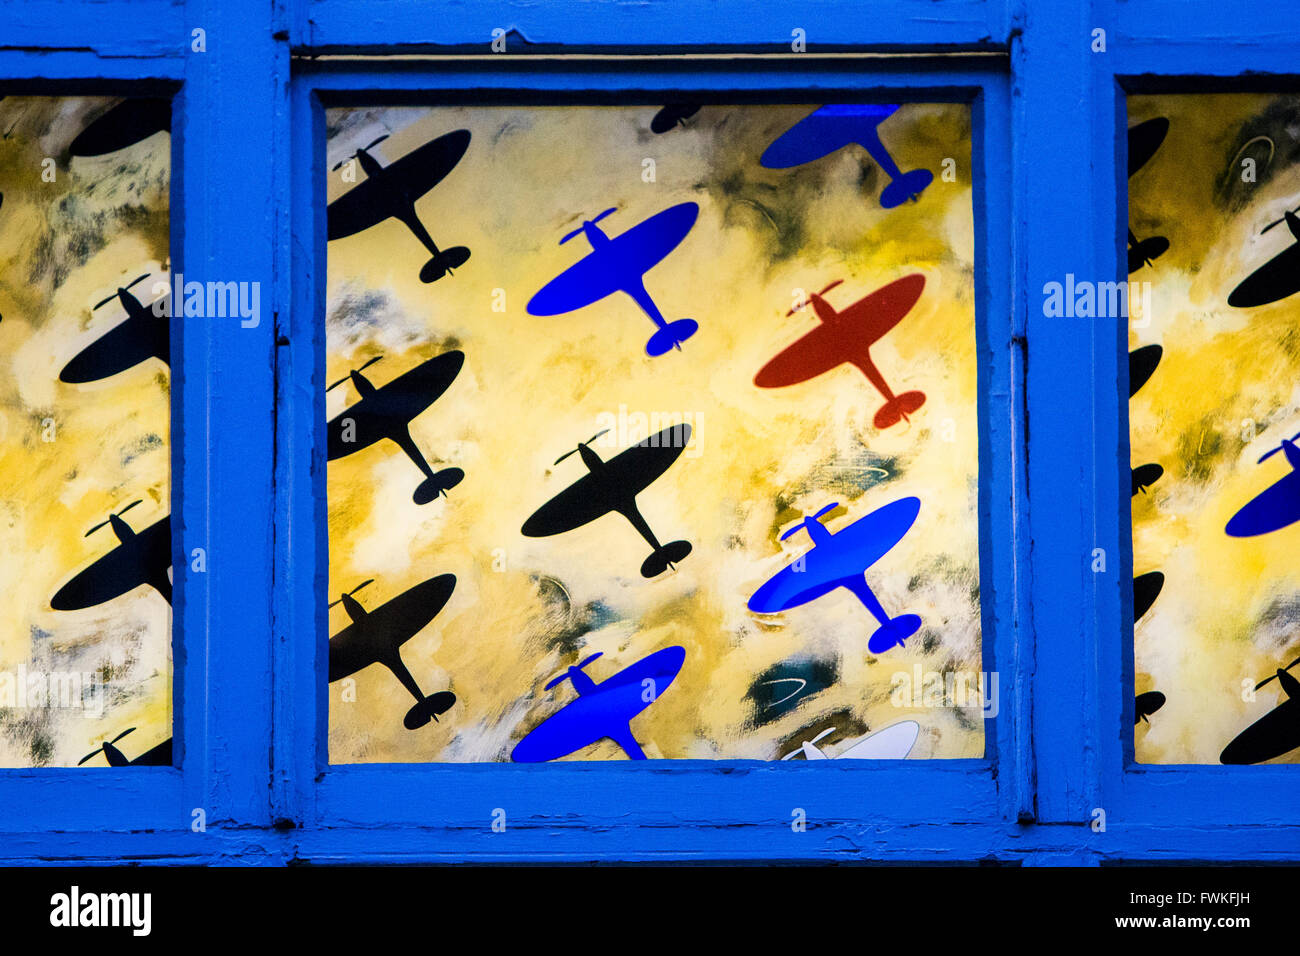 Les vieux avions avions Spitfire sur un cadre de fenêtre Londres Banque D'Images